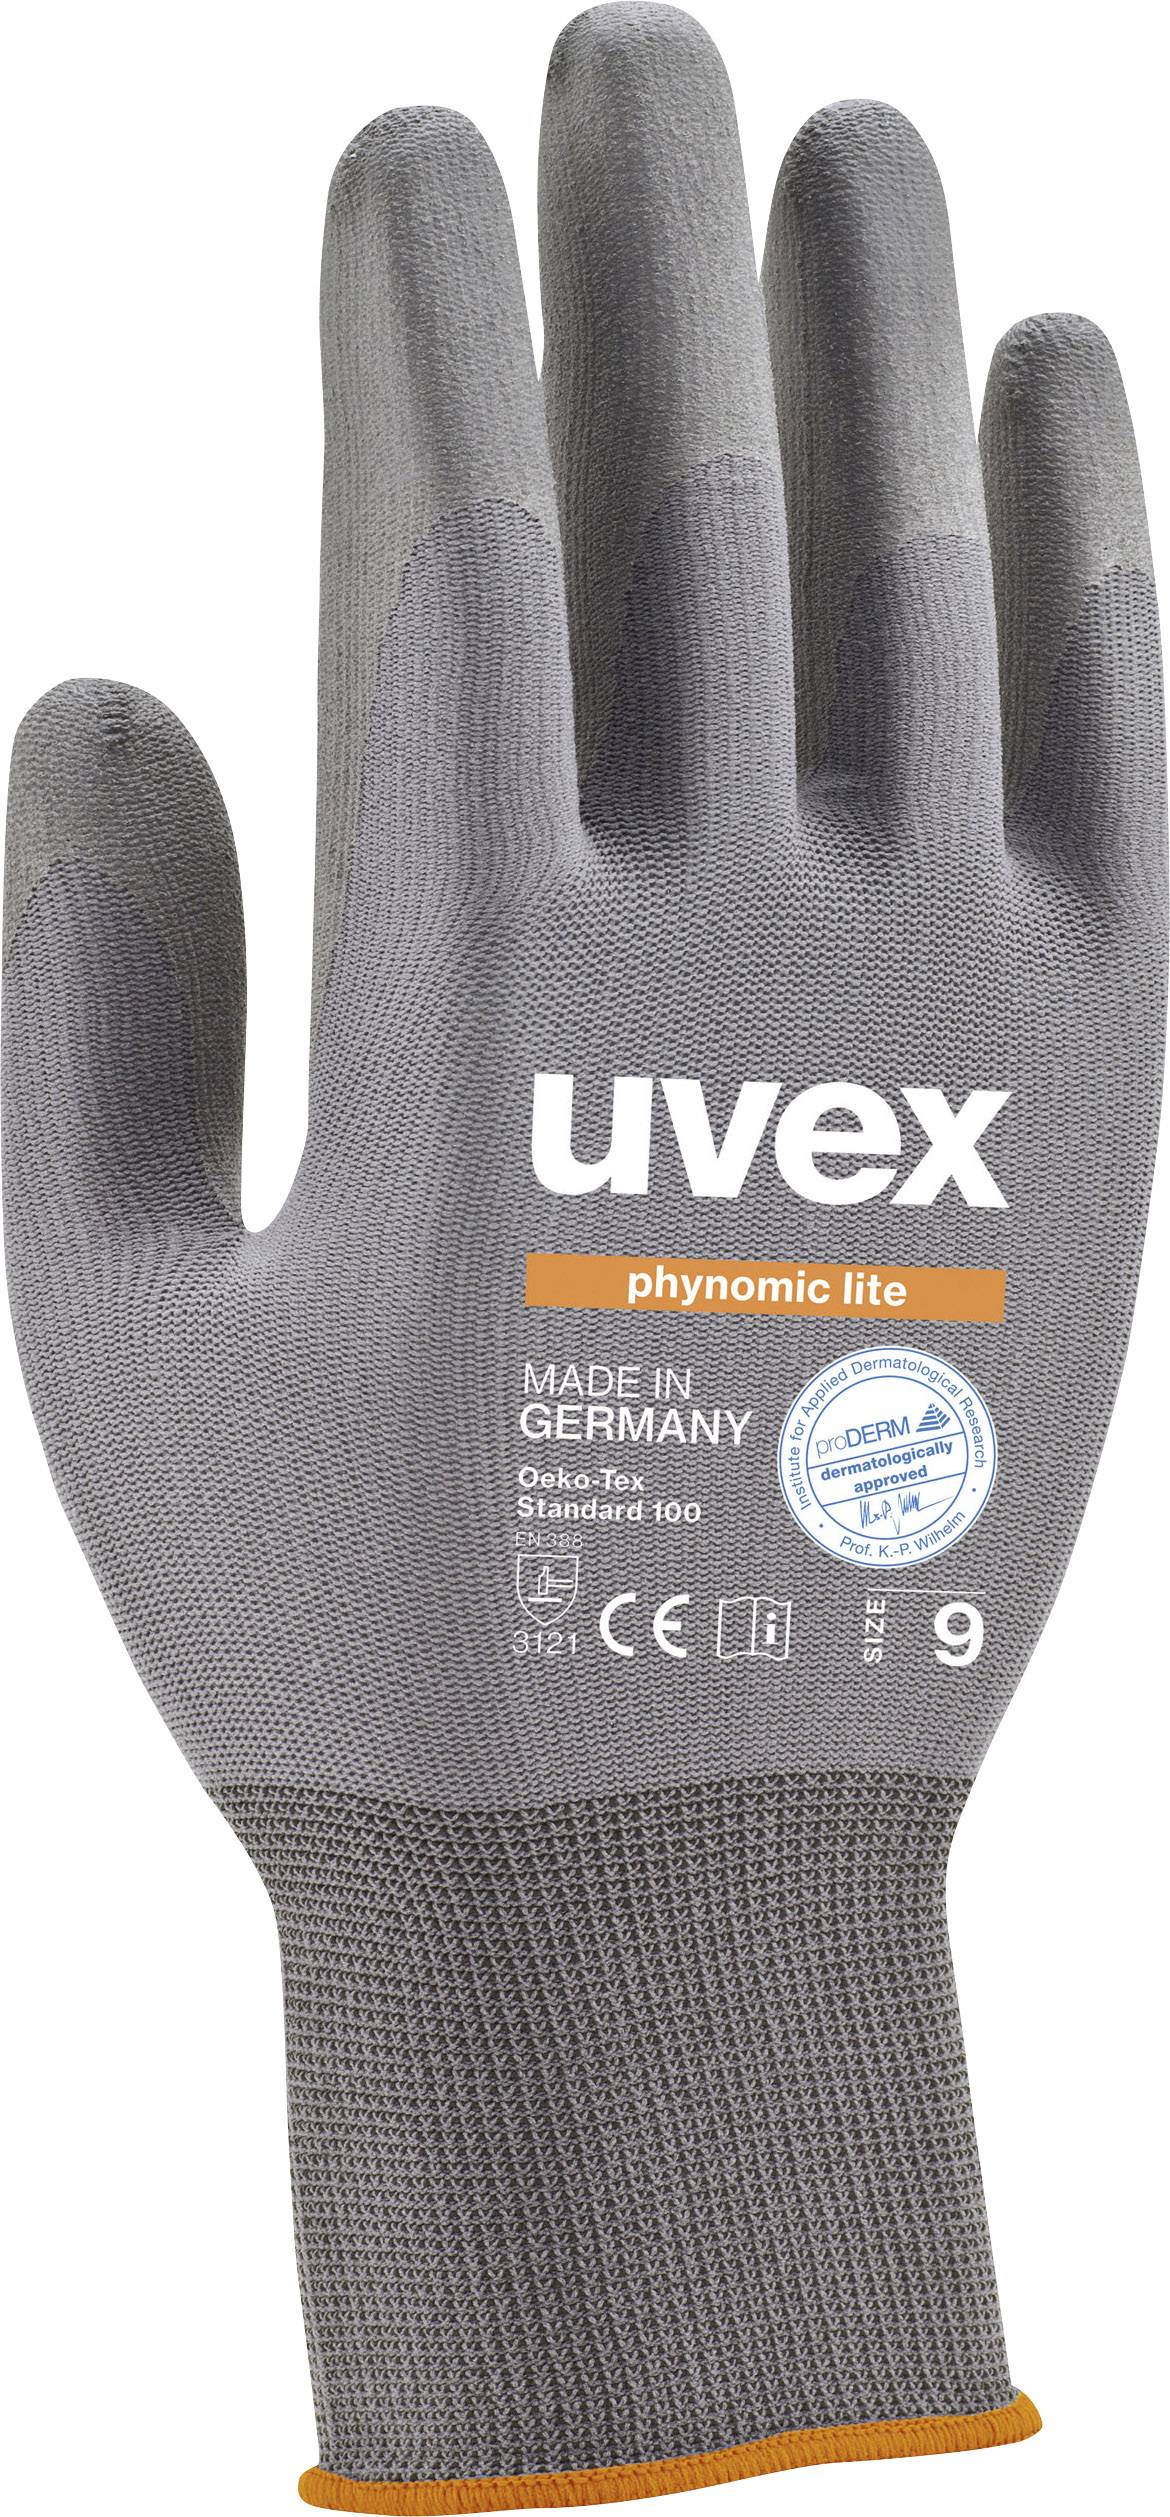 UVEX 6004008 Schutzhandschuh phynomic lite Größe (Handschuhe): 8 (6004008)